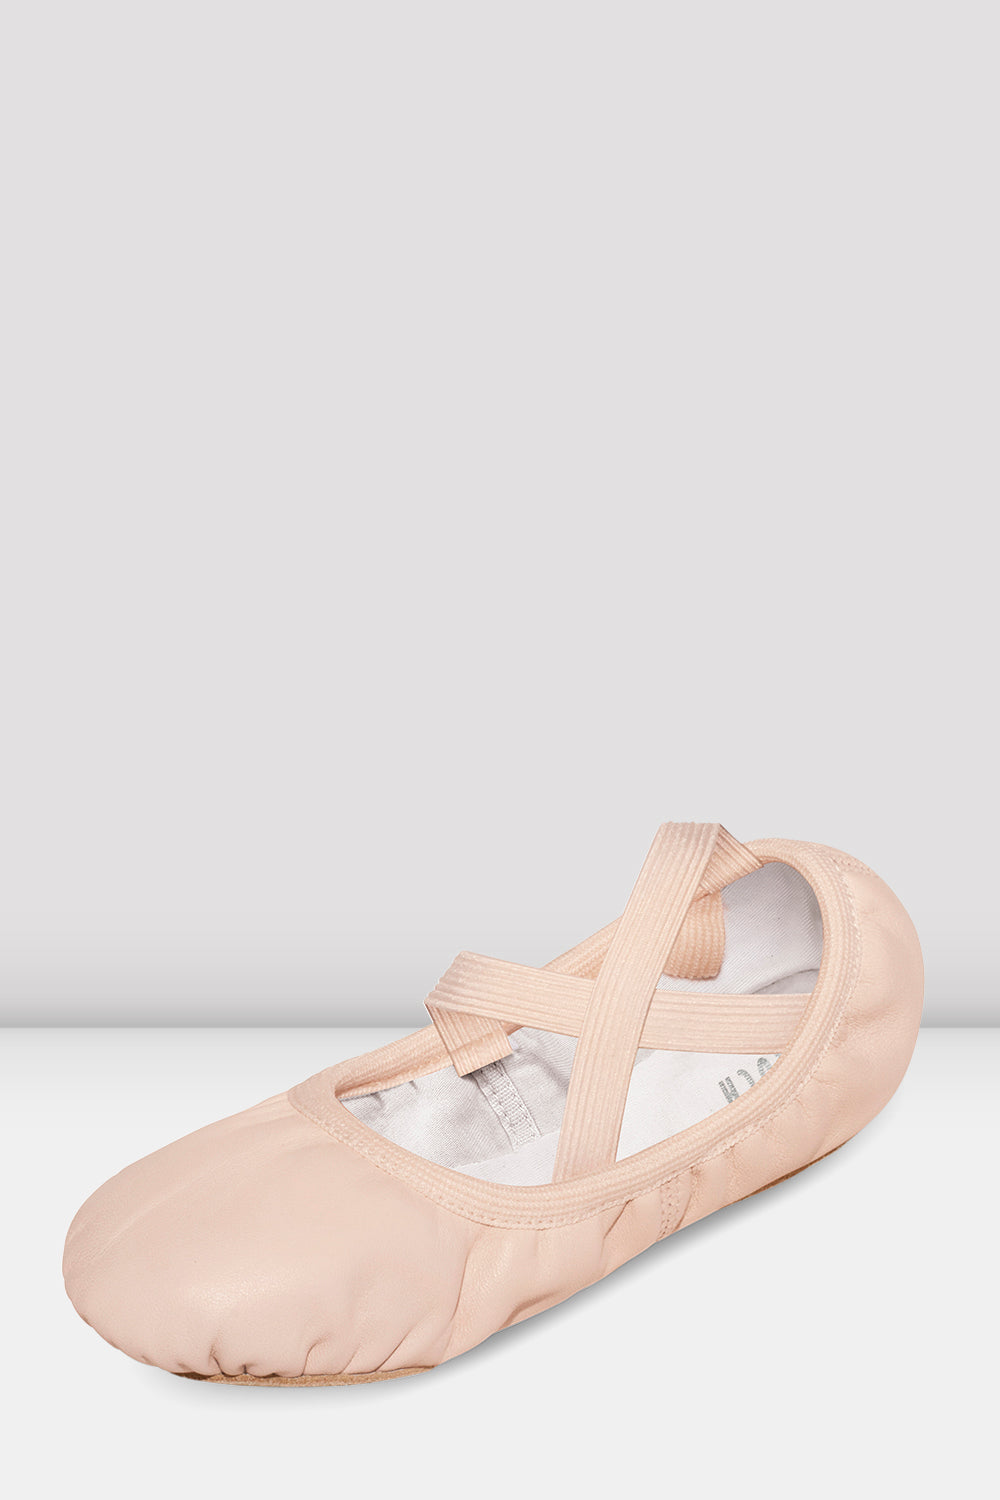 bloch ballet shoes girls